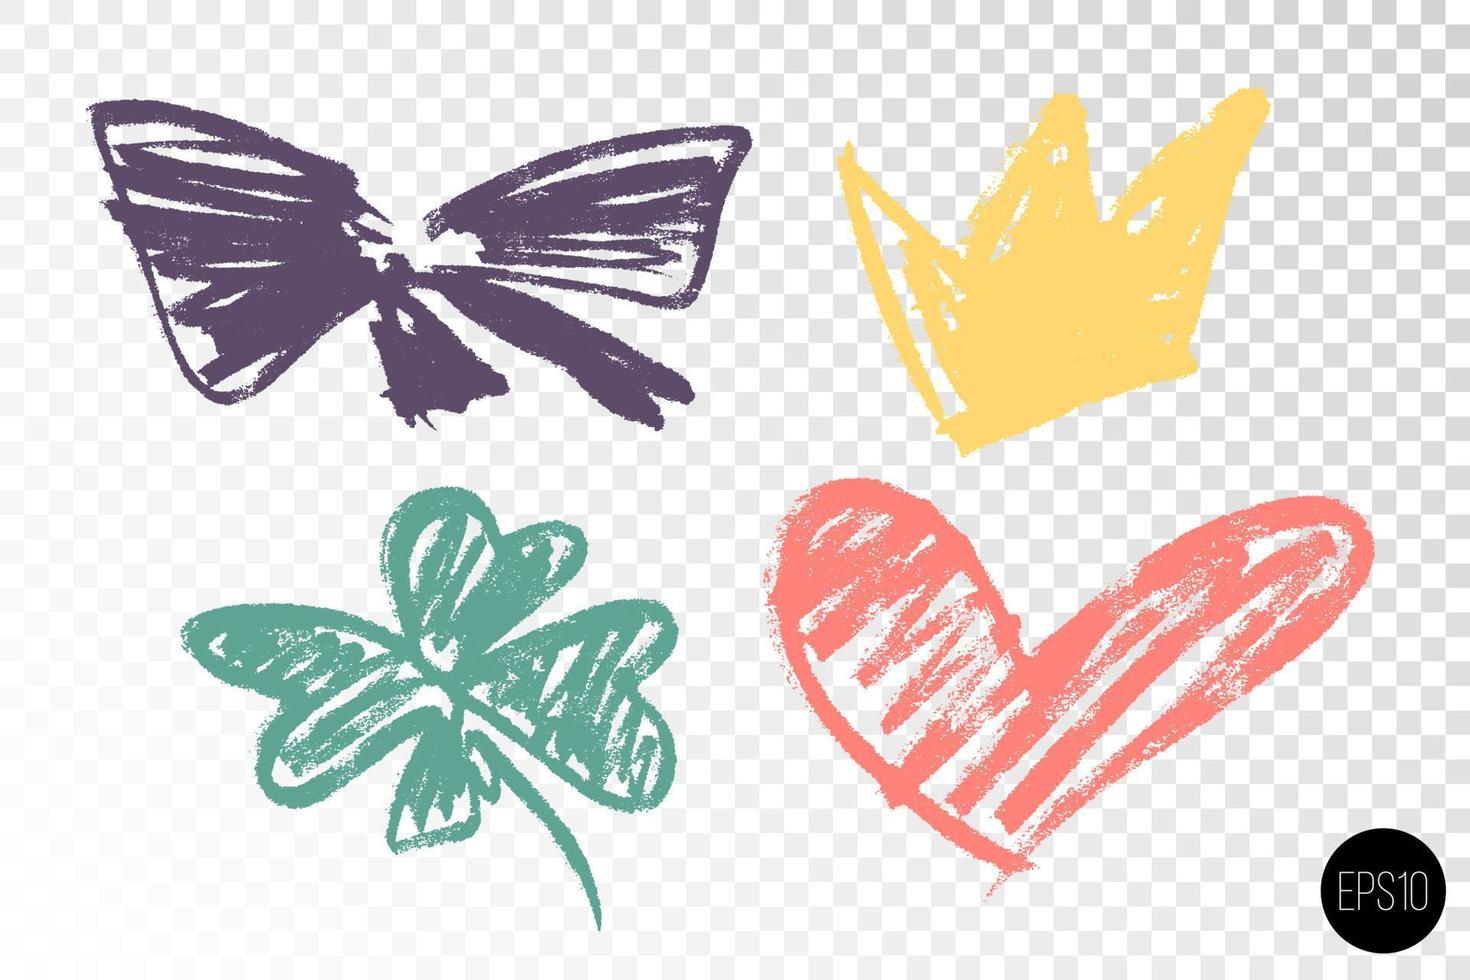 vector conjunto de mano dibujado seco cepillo simbolos vistoso mano dibujado corona, corazón, arco de cinta y cuatro hojas trébol. mano dibujado iconos